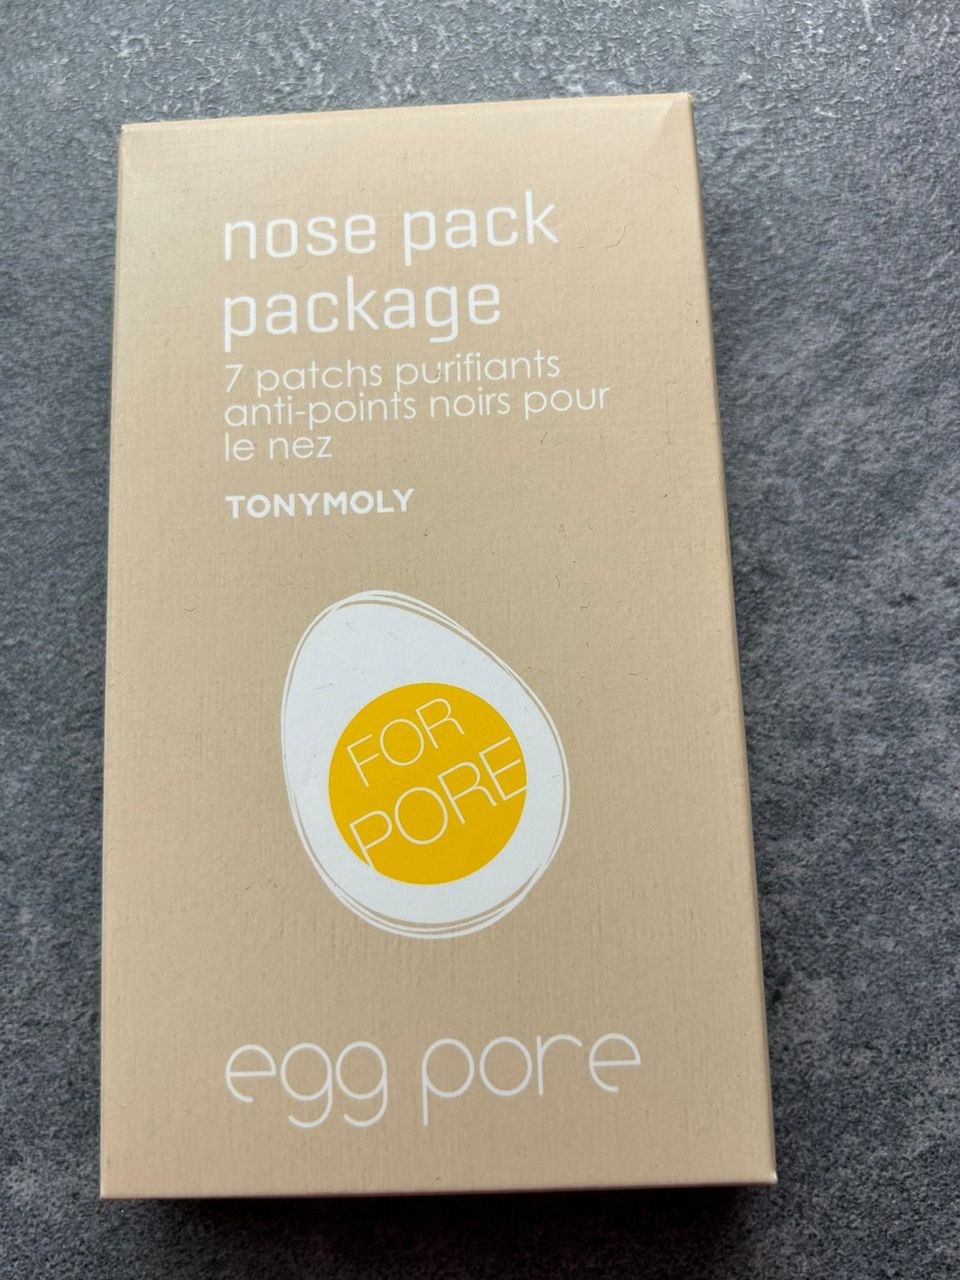 Tony Moly egg pore uusi